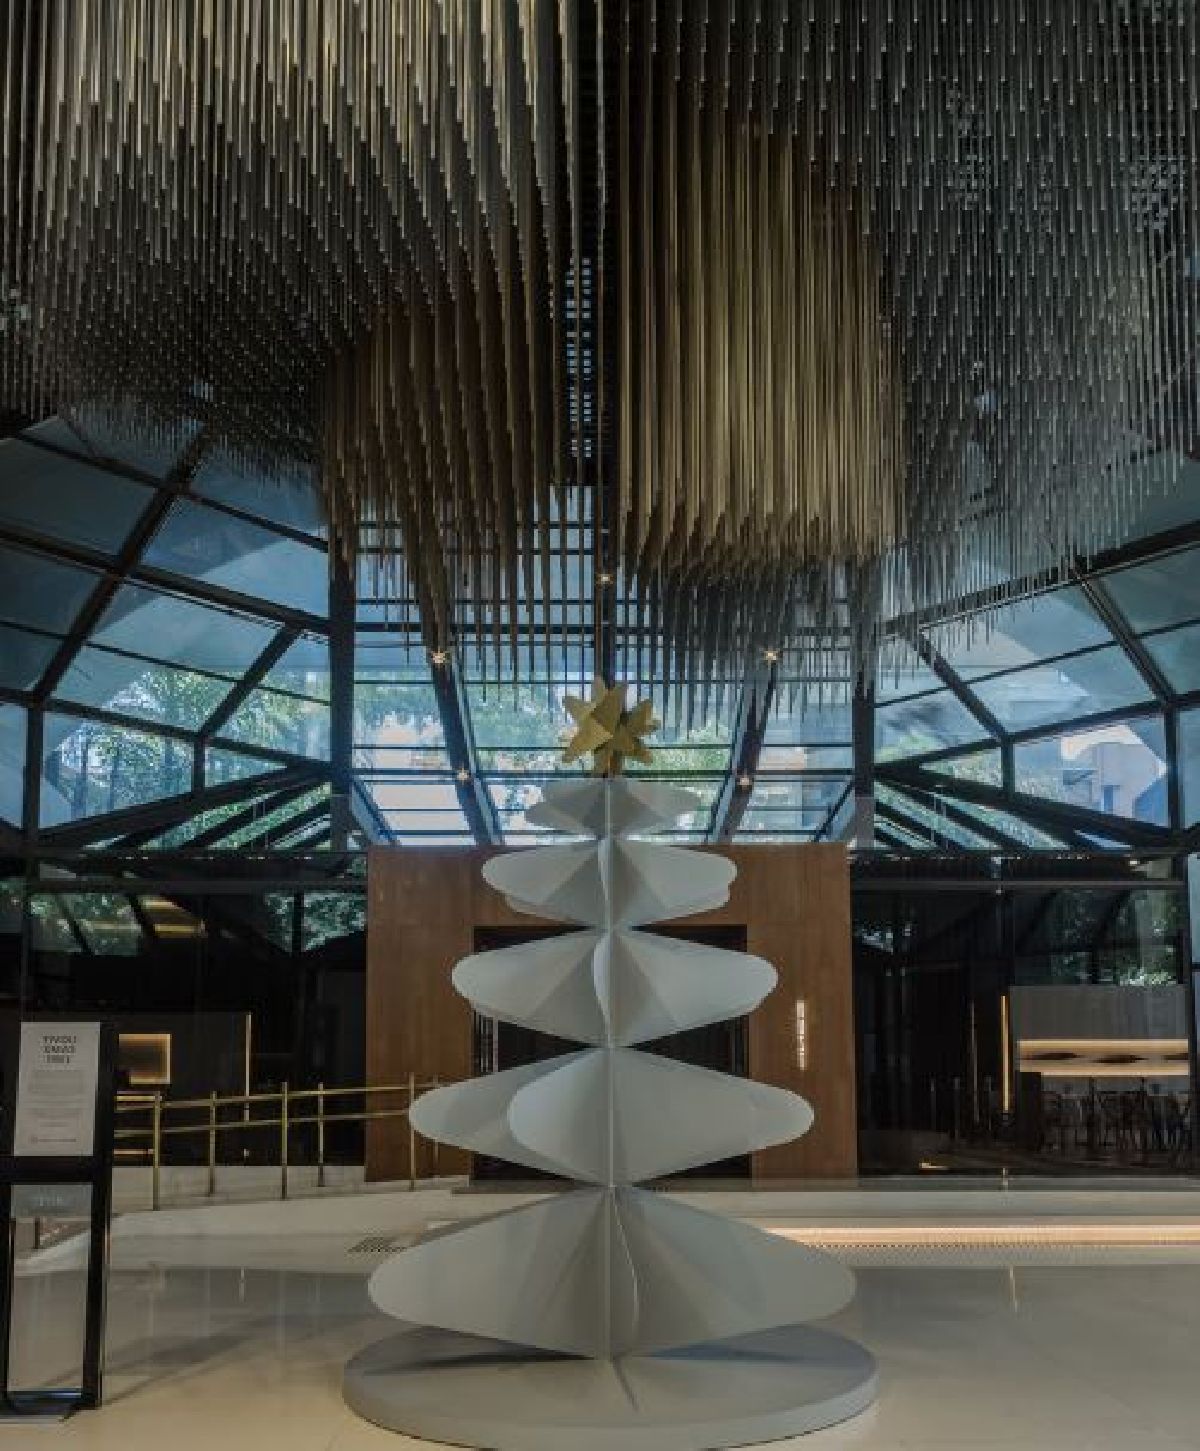 Tivoli Mofarrej São Paulo inaugura Árvore de Natal com design exclusivo em aço inspirado em sua própria arquitetura  